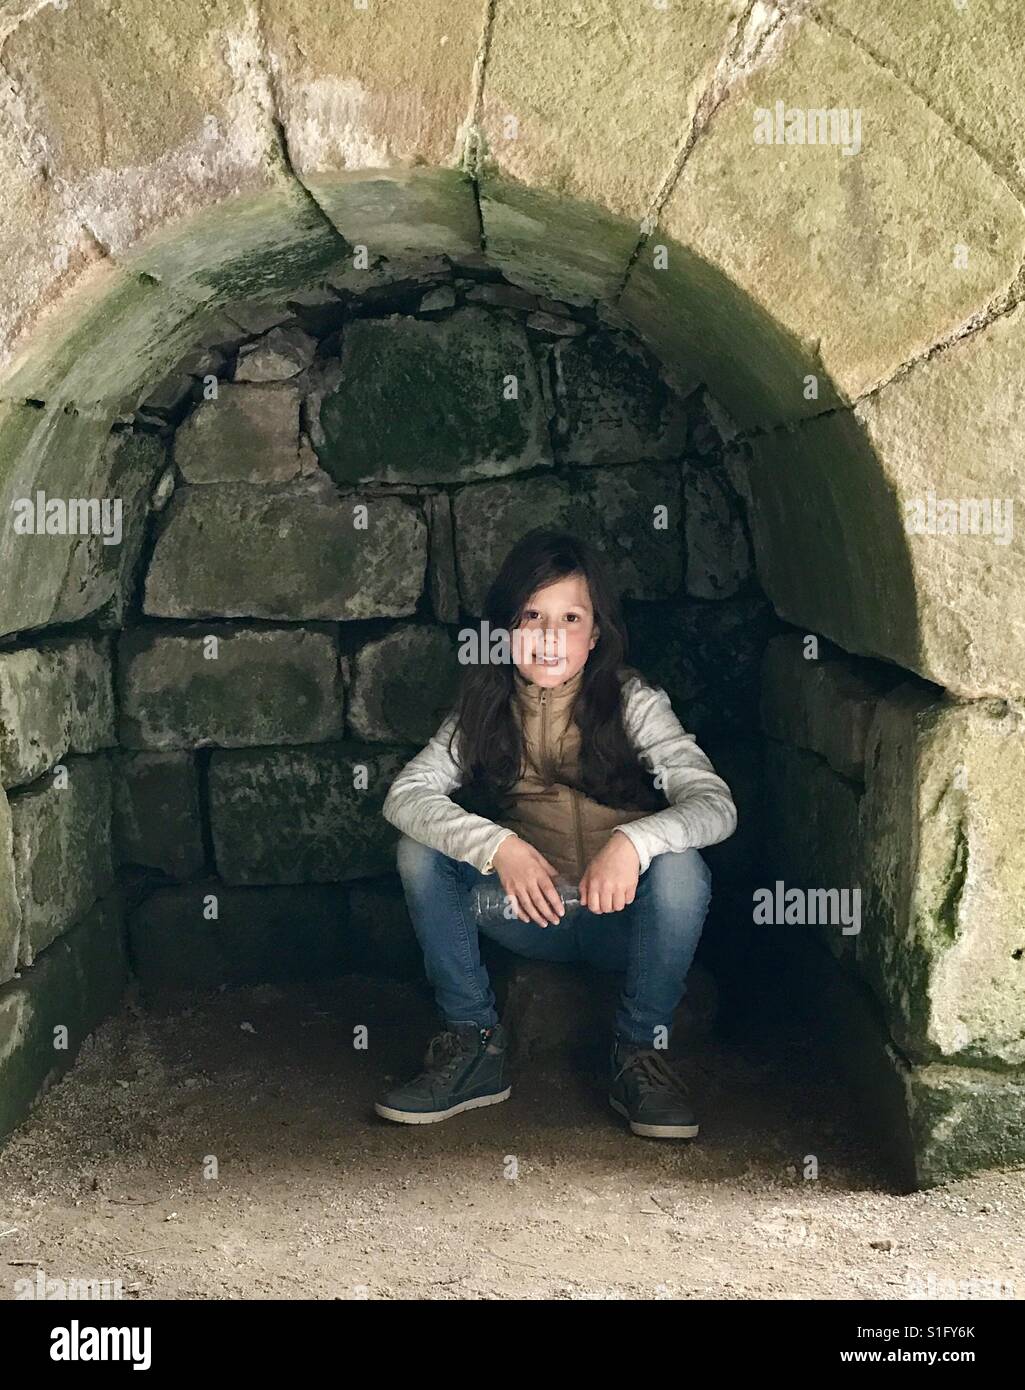 Una giovane ragazza si trova all interno di un antico arco in pietra, guardando nella telecamera. Foto Stock